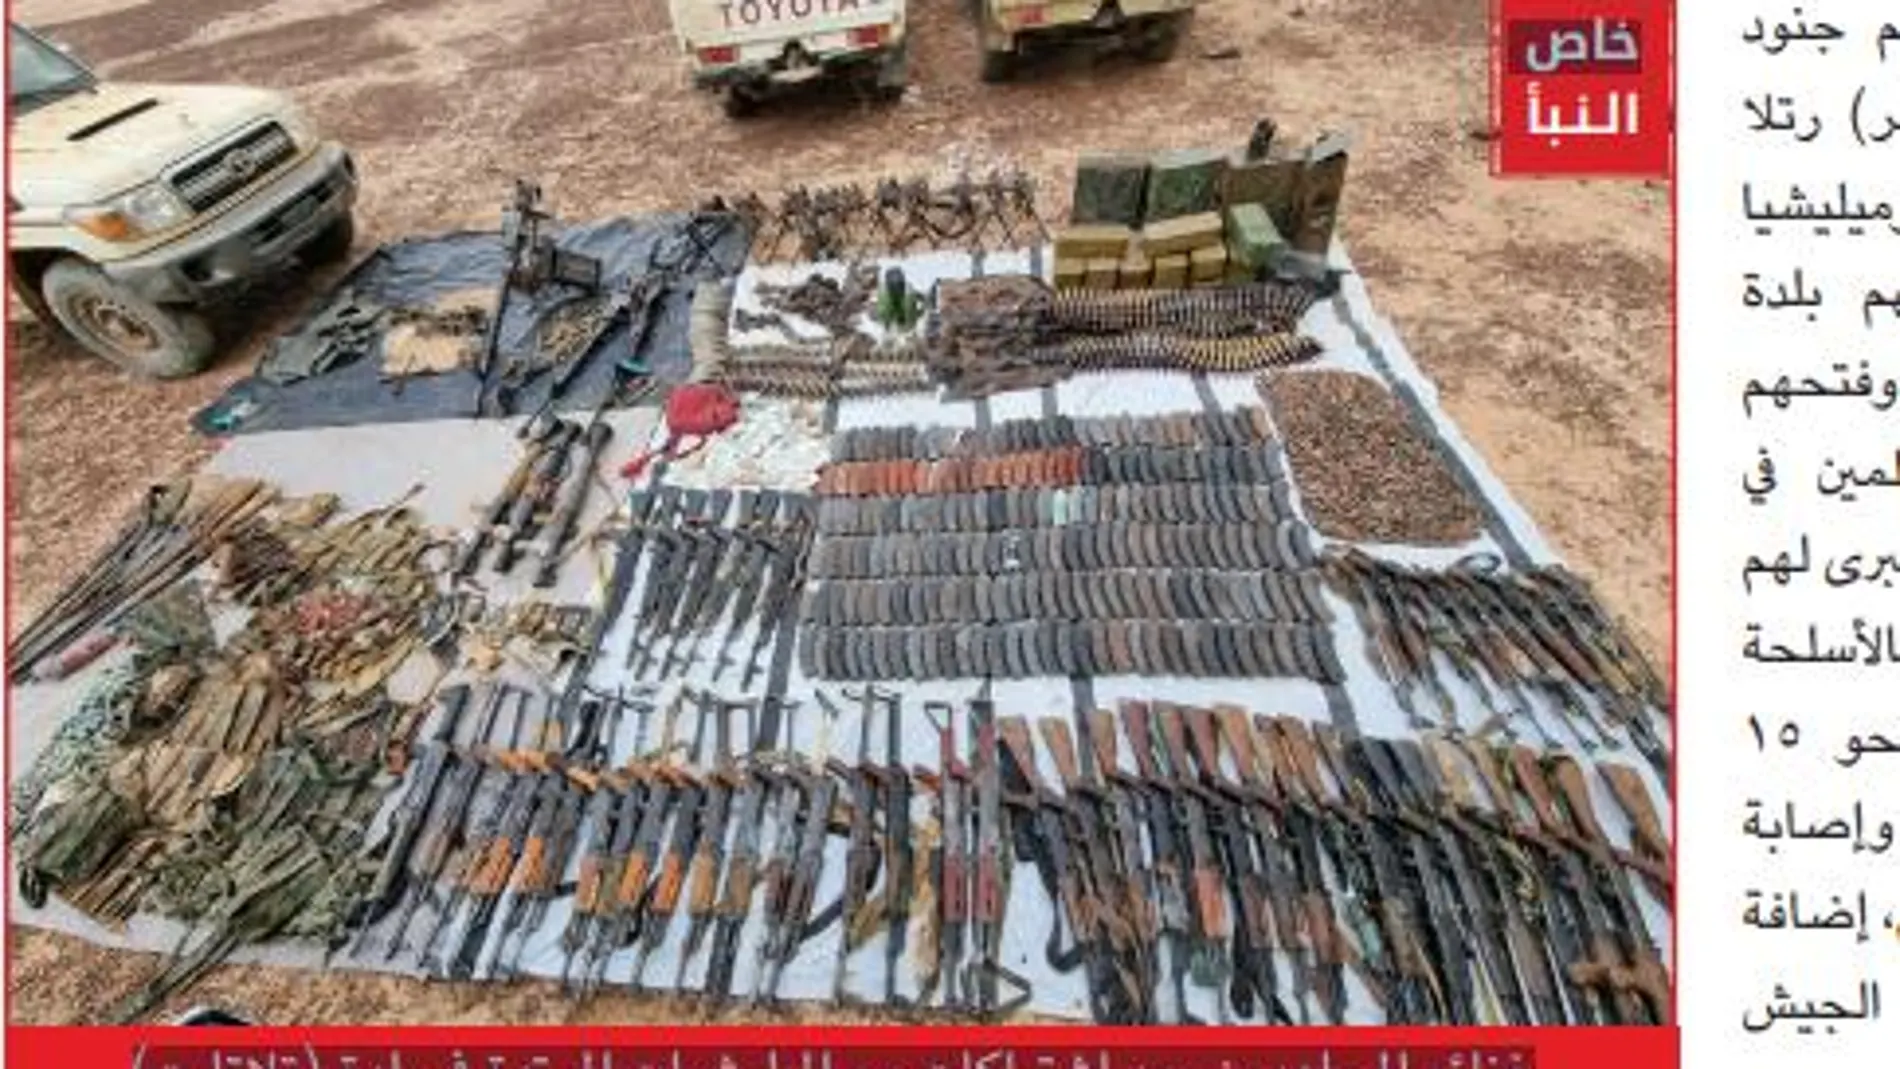 Fotografía del Estado Islámico de material militar incautado al "enemigo" en sus operaciones